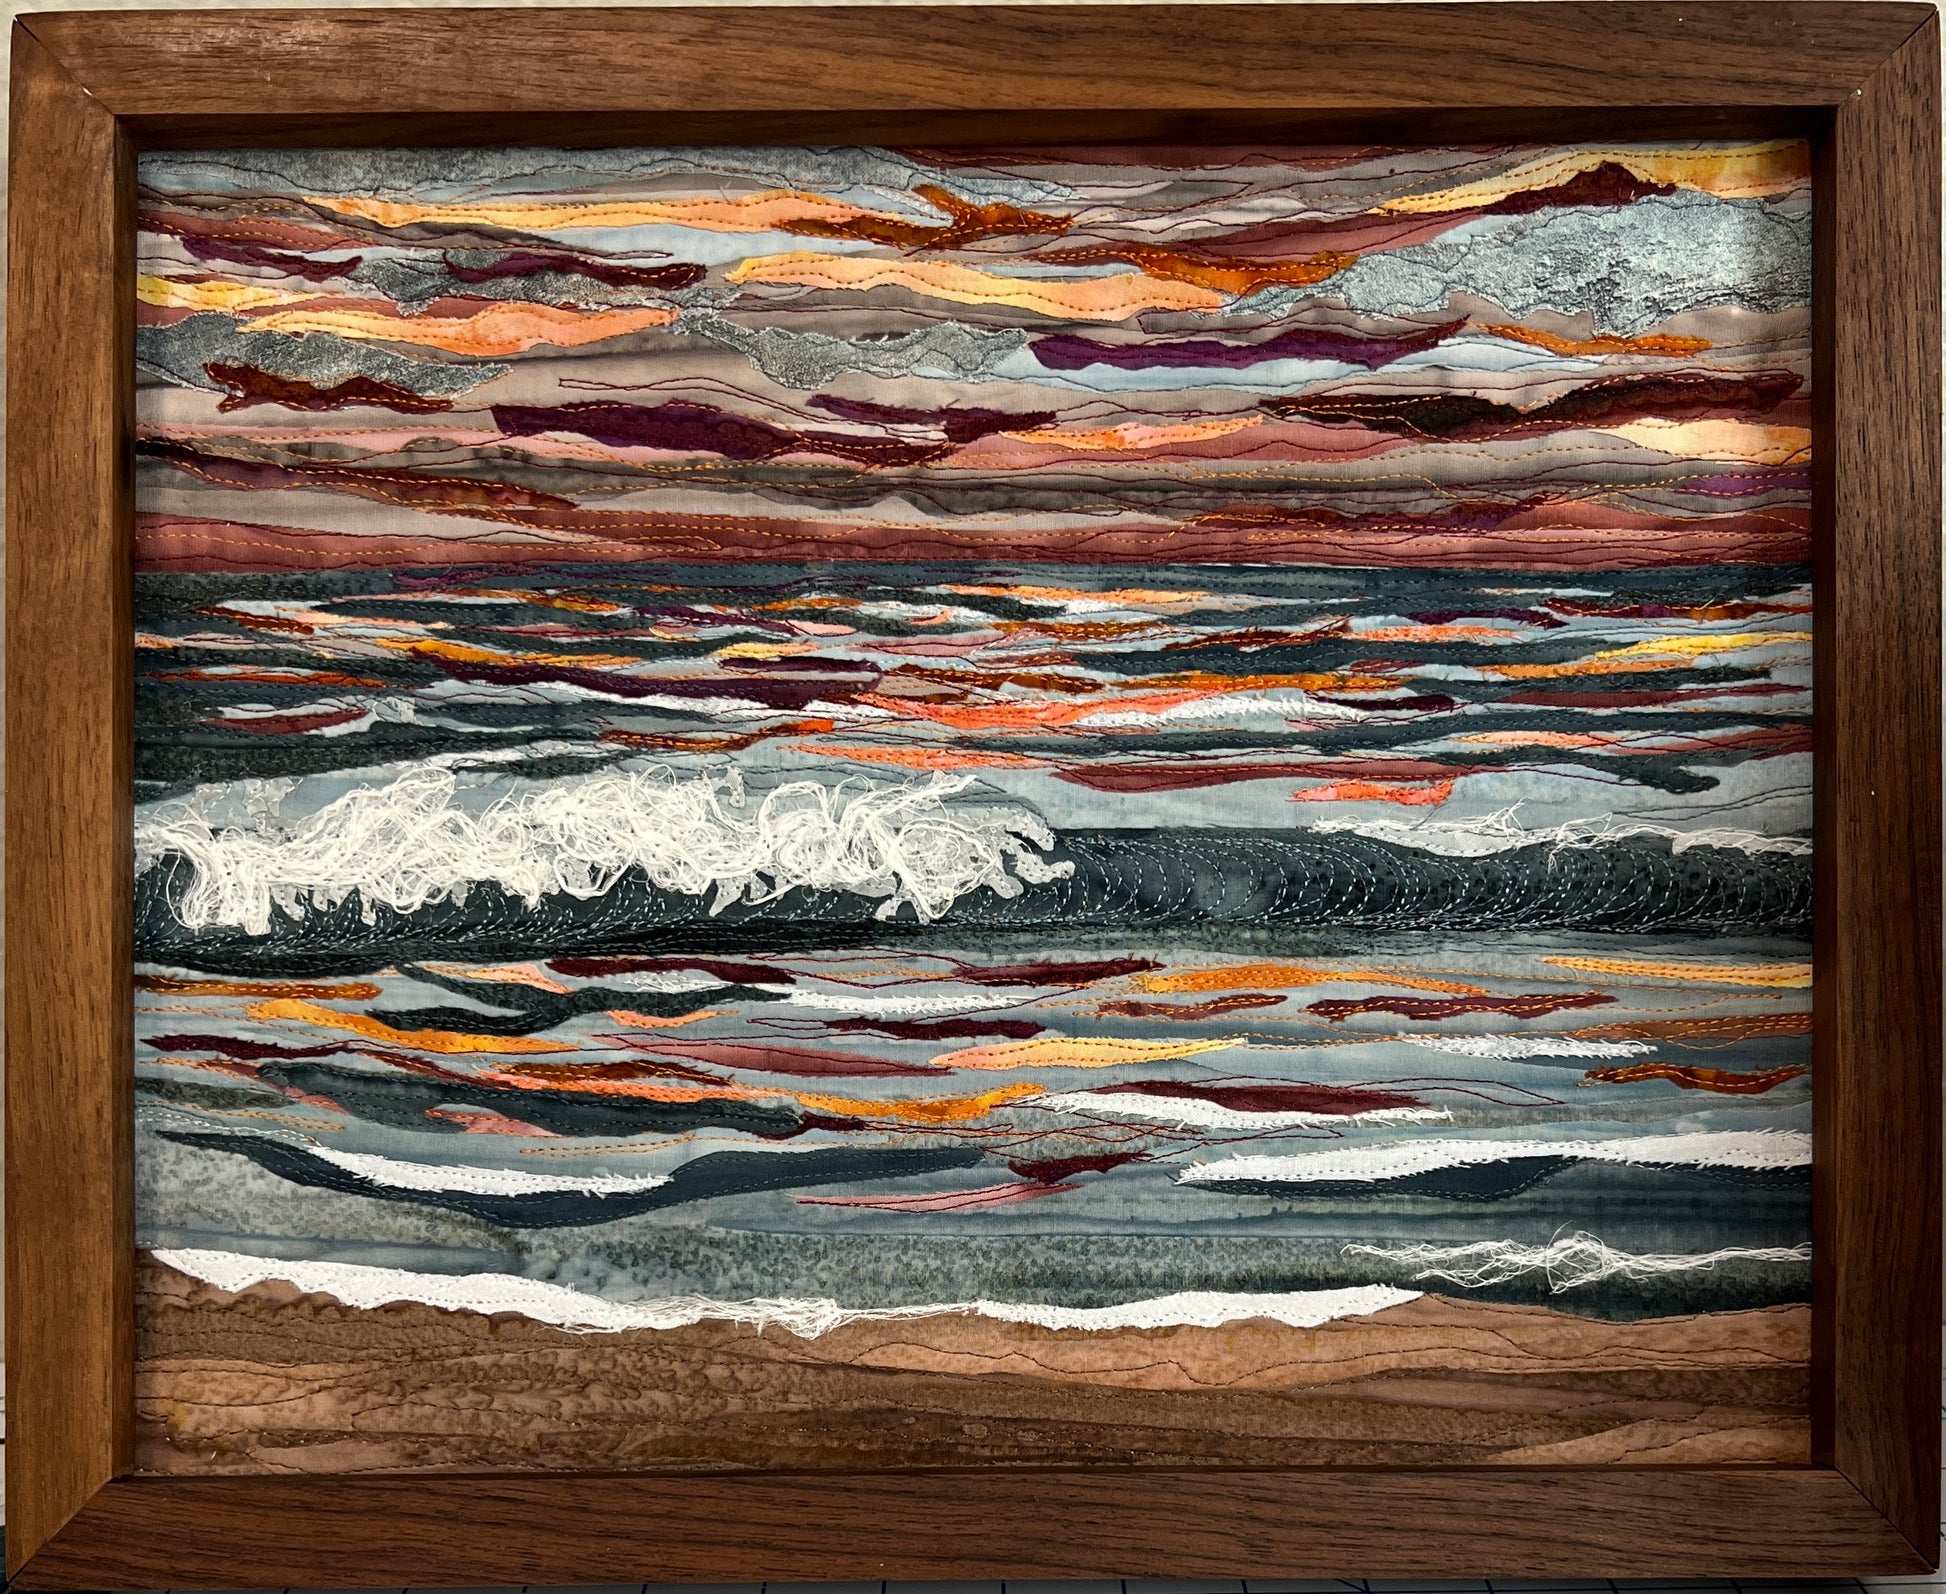 Ocean sunset textile art framed